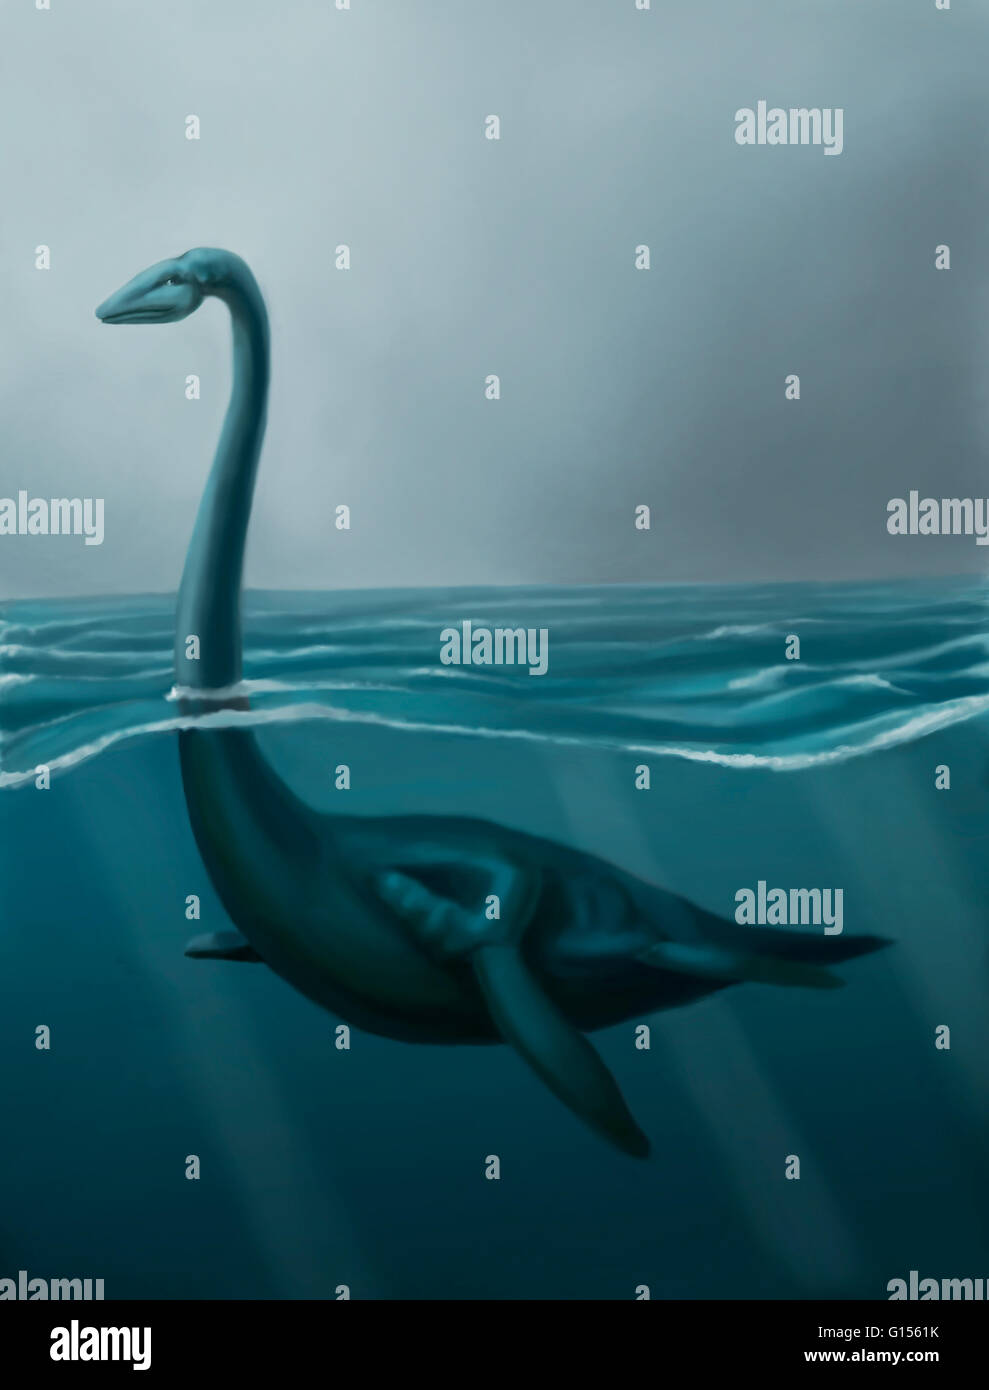 Illustrazione del mostro di Loch Ness nuoto. Avvistamenti del mostro si sono verificati almeno a partire dal XV secolo, con storie precedenti risalente al VI secolo, ma le prove scientifiche per la sua esistenza è carente. Gli scettici hanno suggerito che la Foto Stock